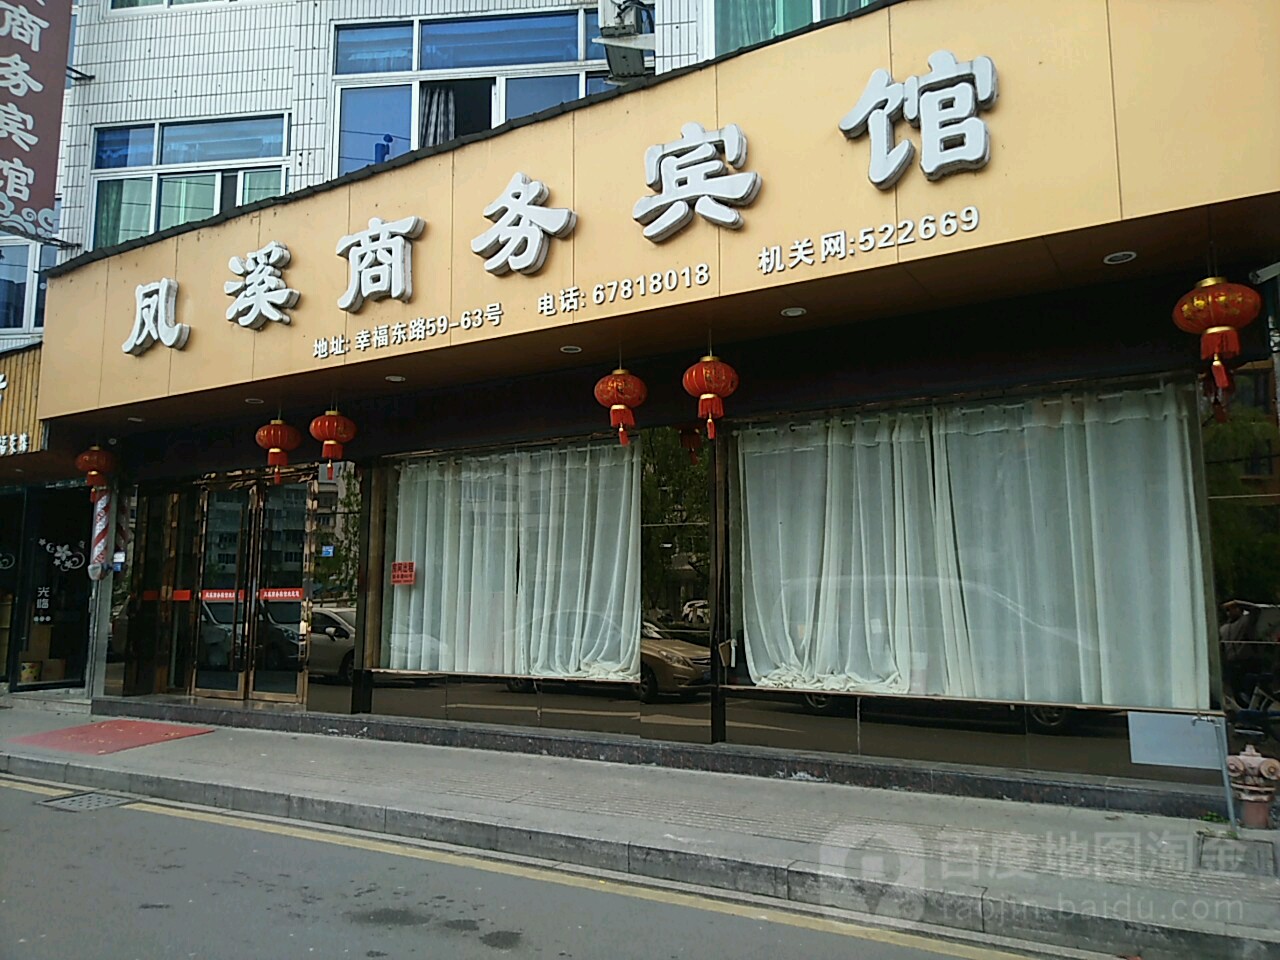 文成鳳溪商務賓館